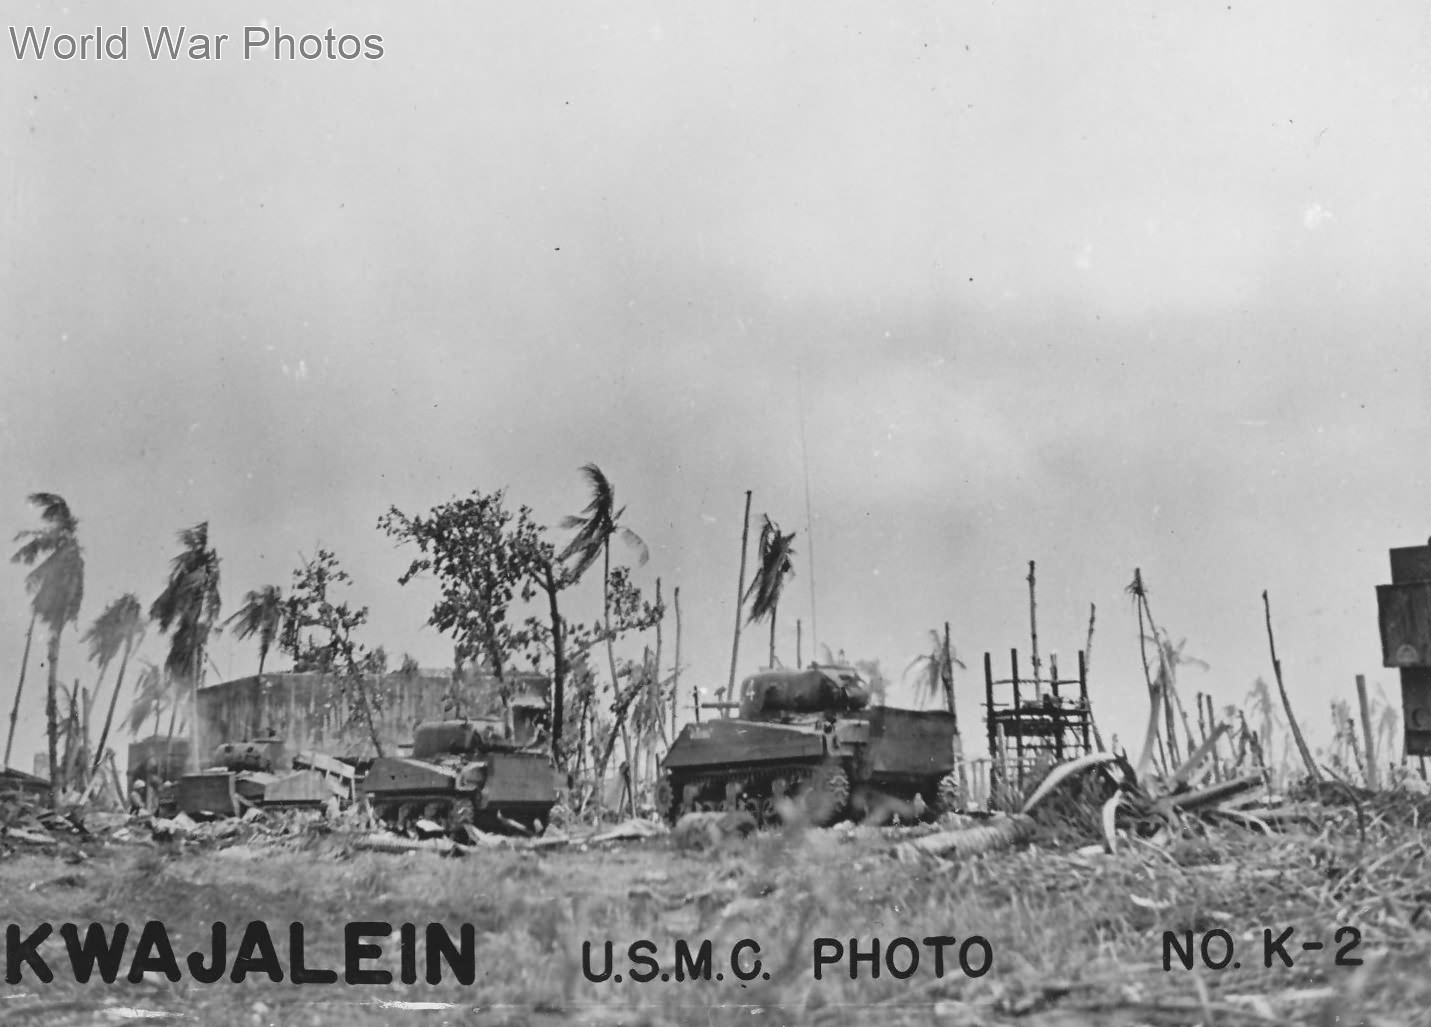 Shermans Battle of Kwajalein